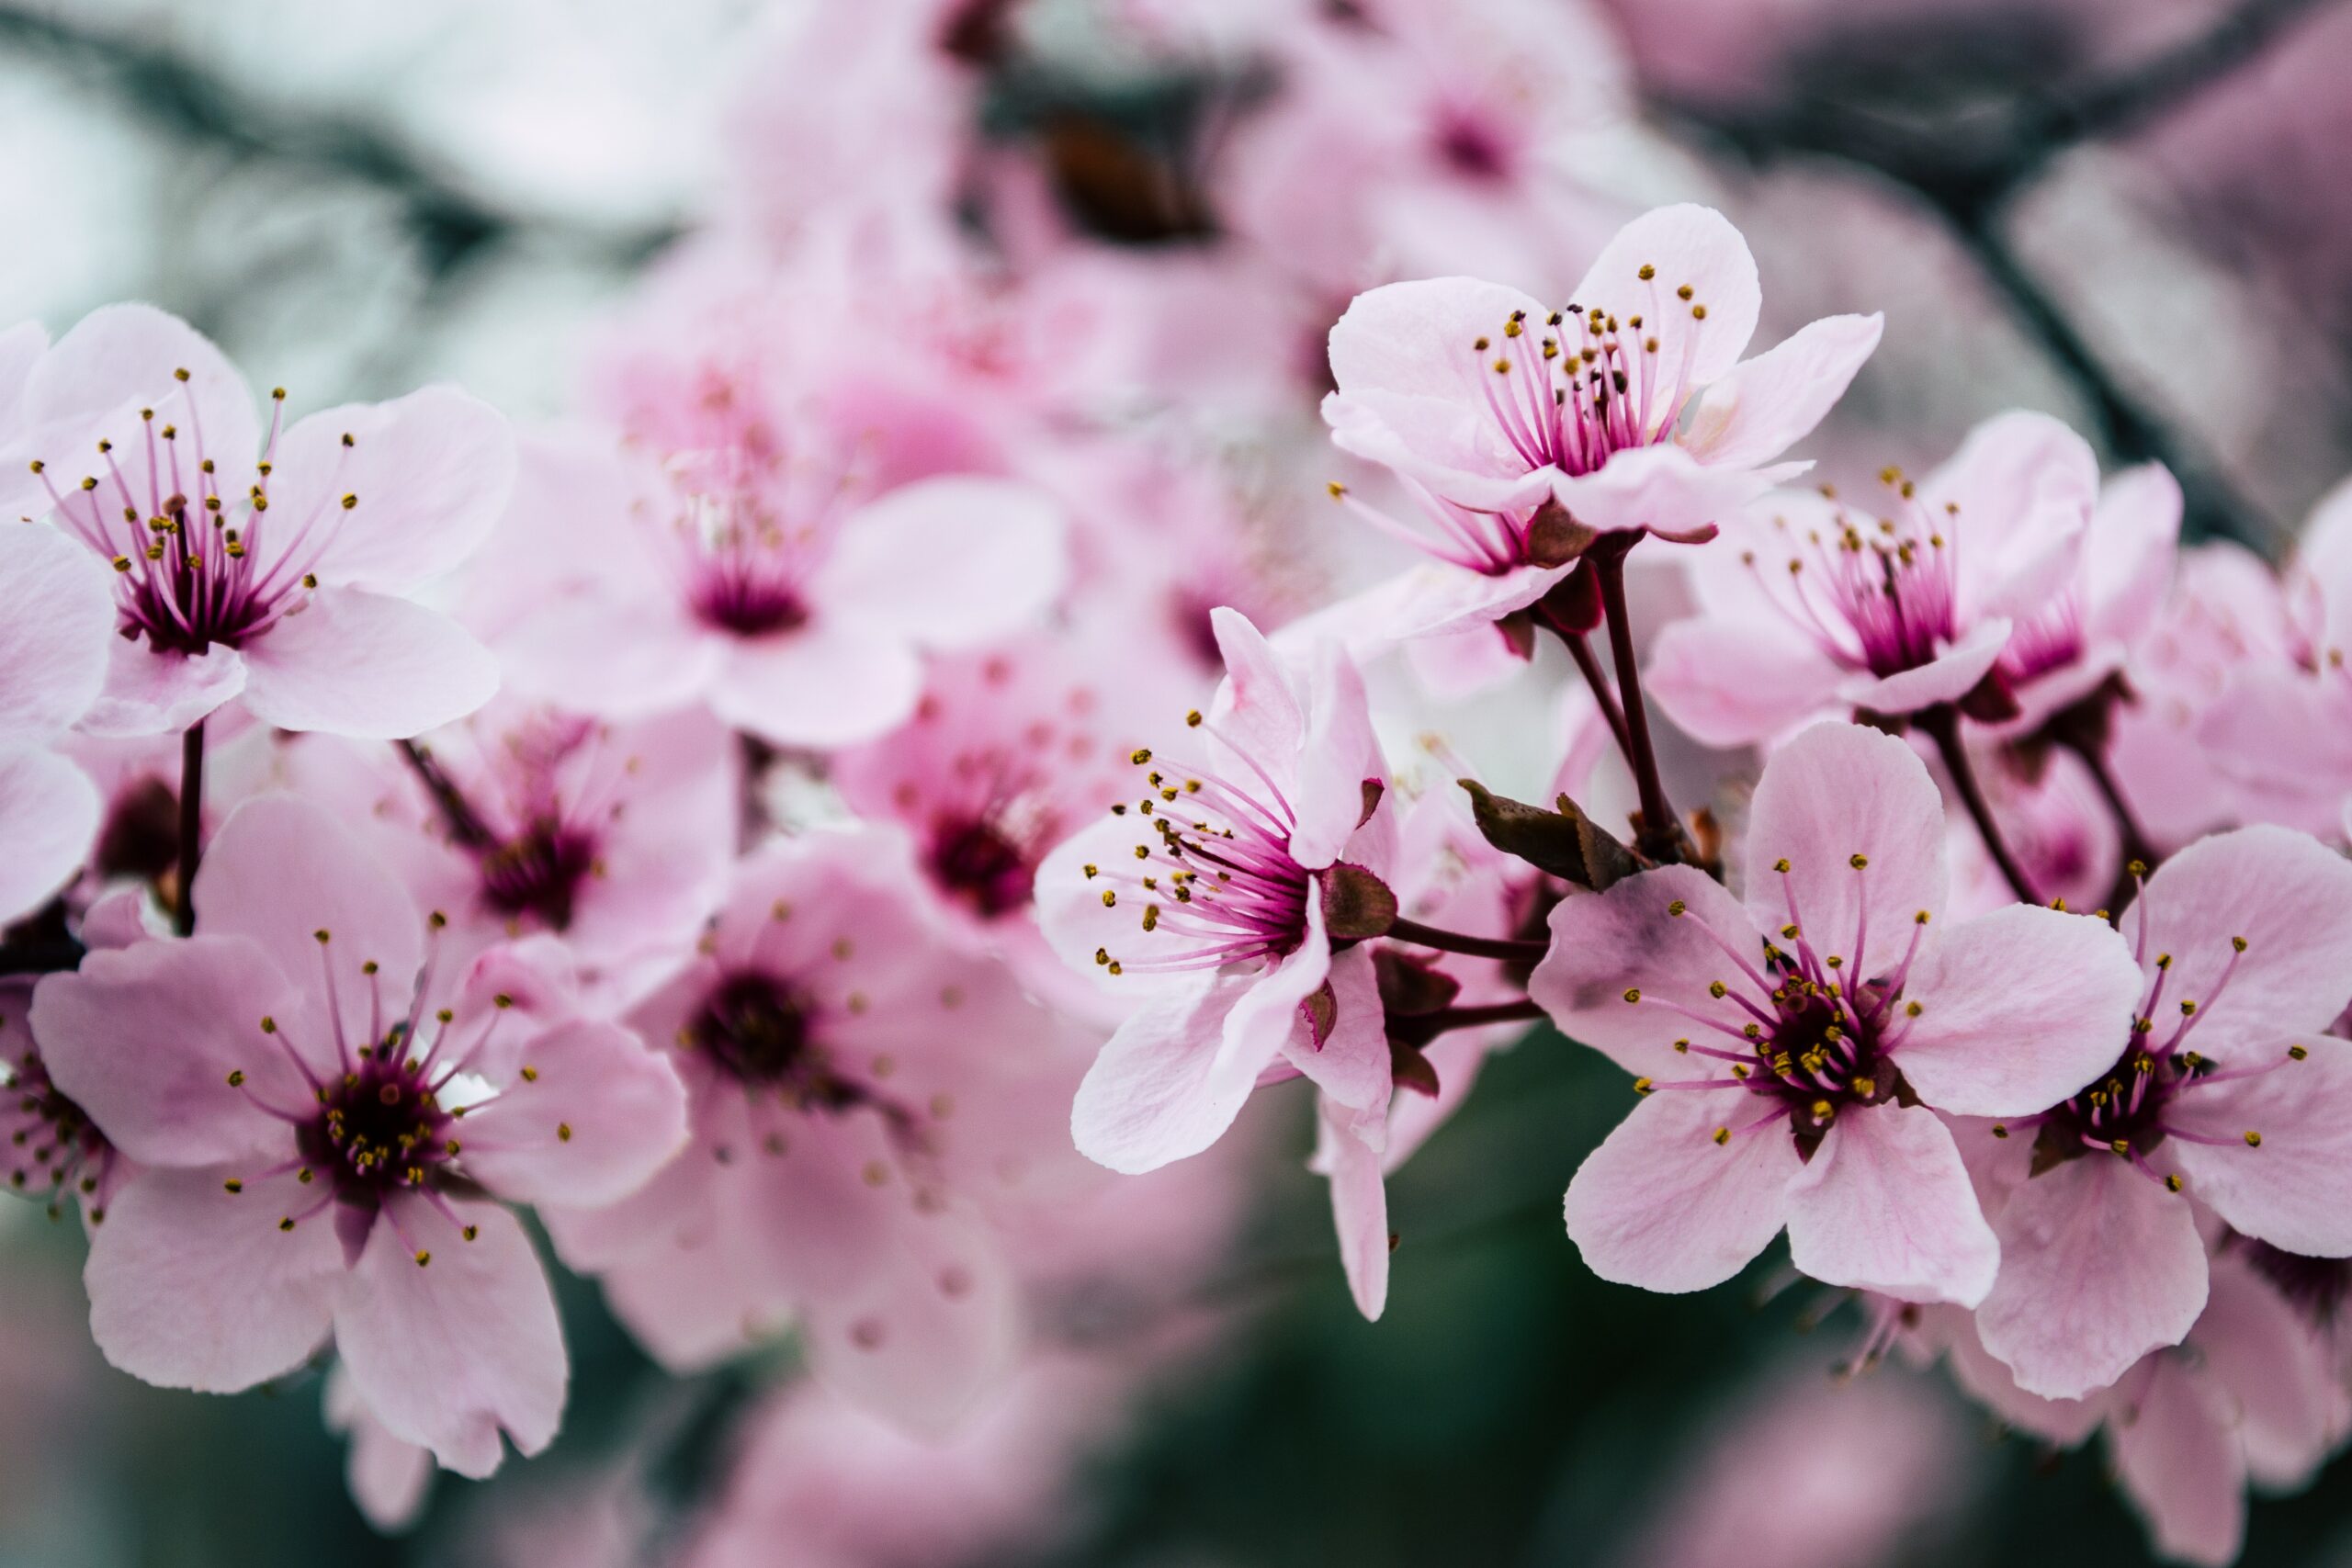 manfaat bunga sakura untuk wajah (2)